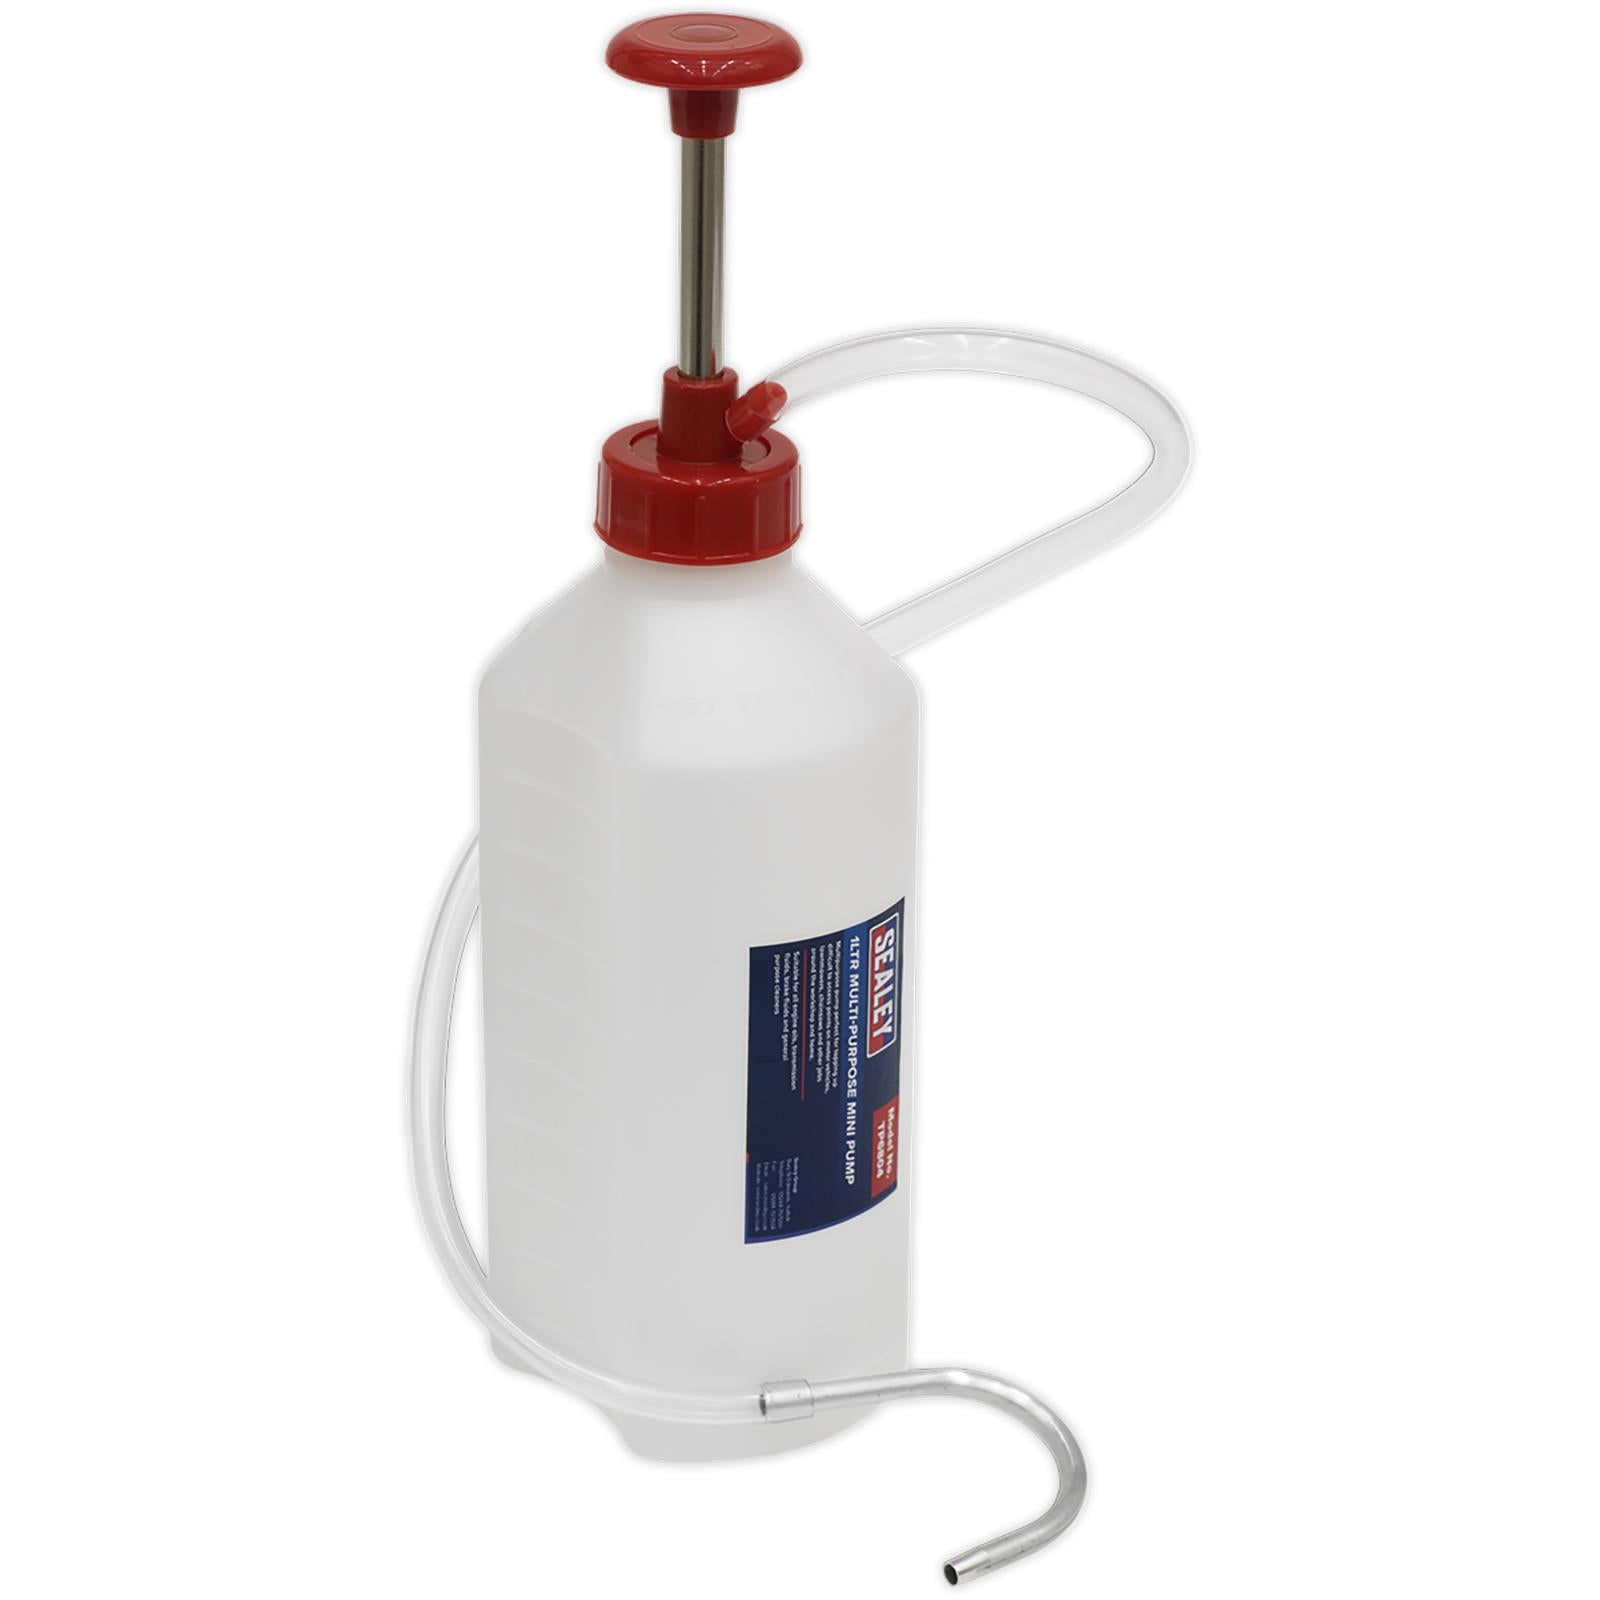 Sealey Multipurpose Mini Pump 1 Litre Capacity Brake Fluid Engine Oils